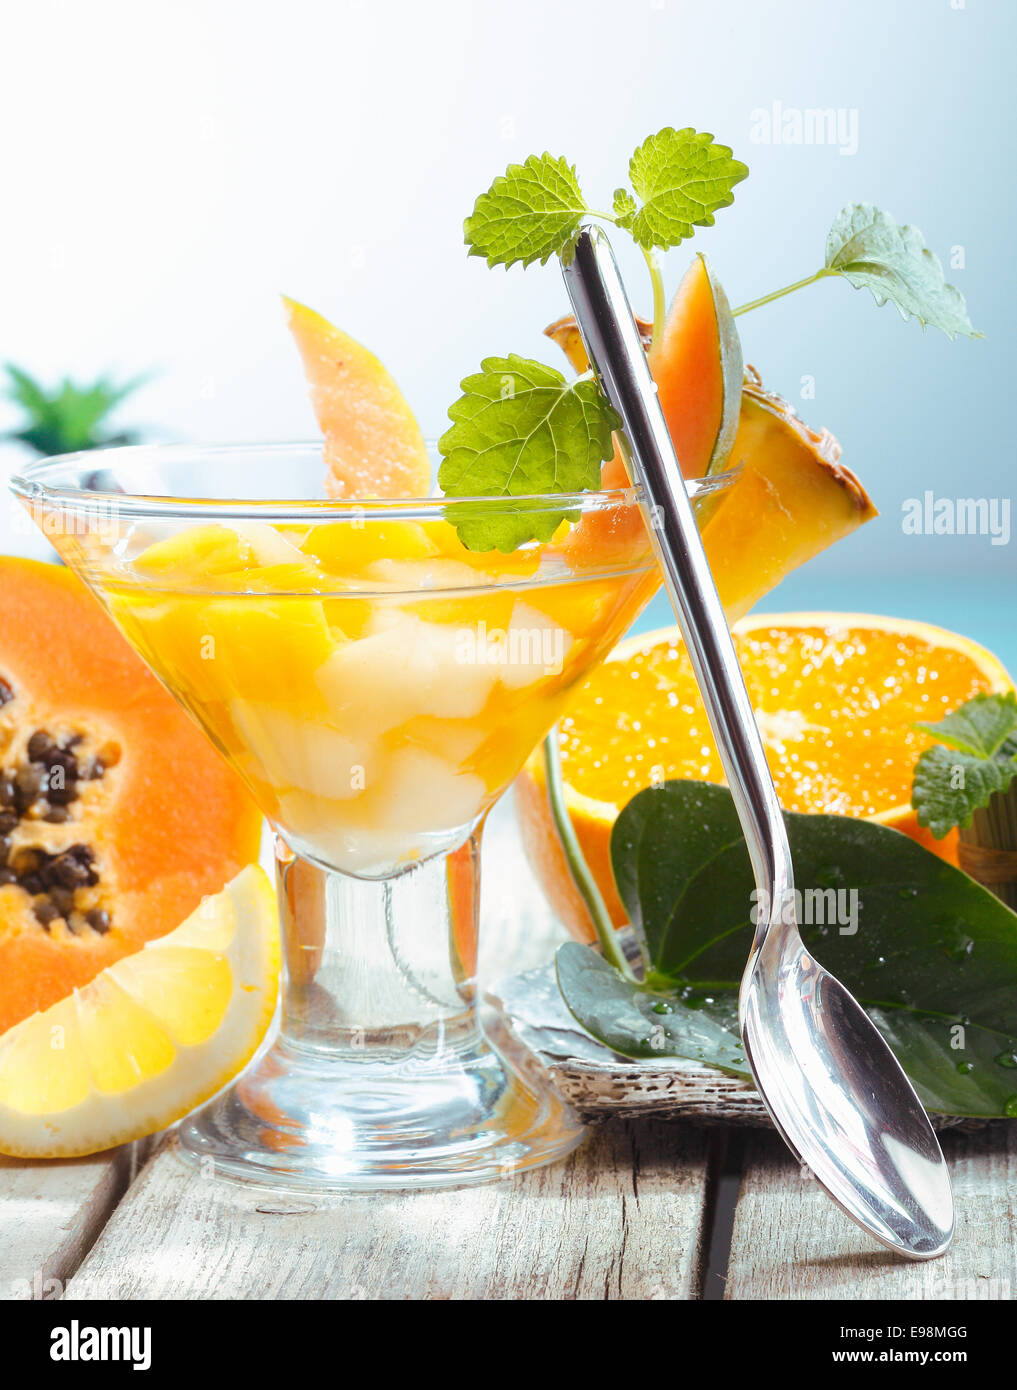 Servire di frutta fresca tropicale insalata in un bicchiere conico con un cucchiaio e frutta esotica Foto Stock